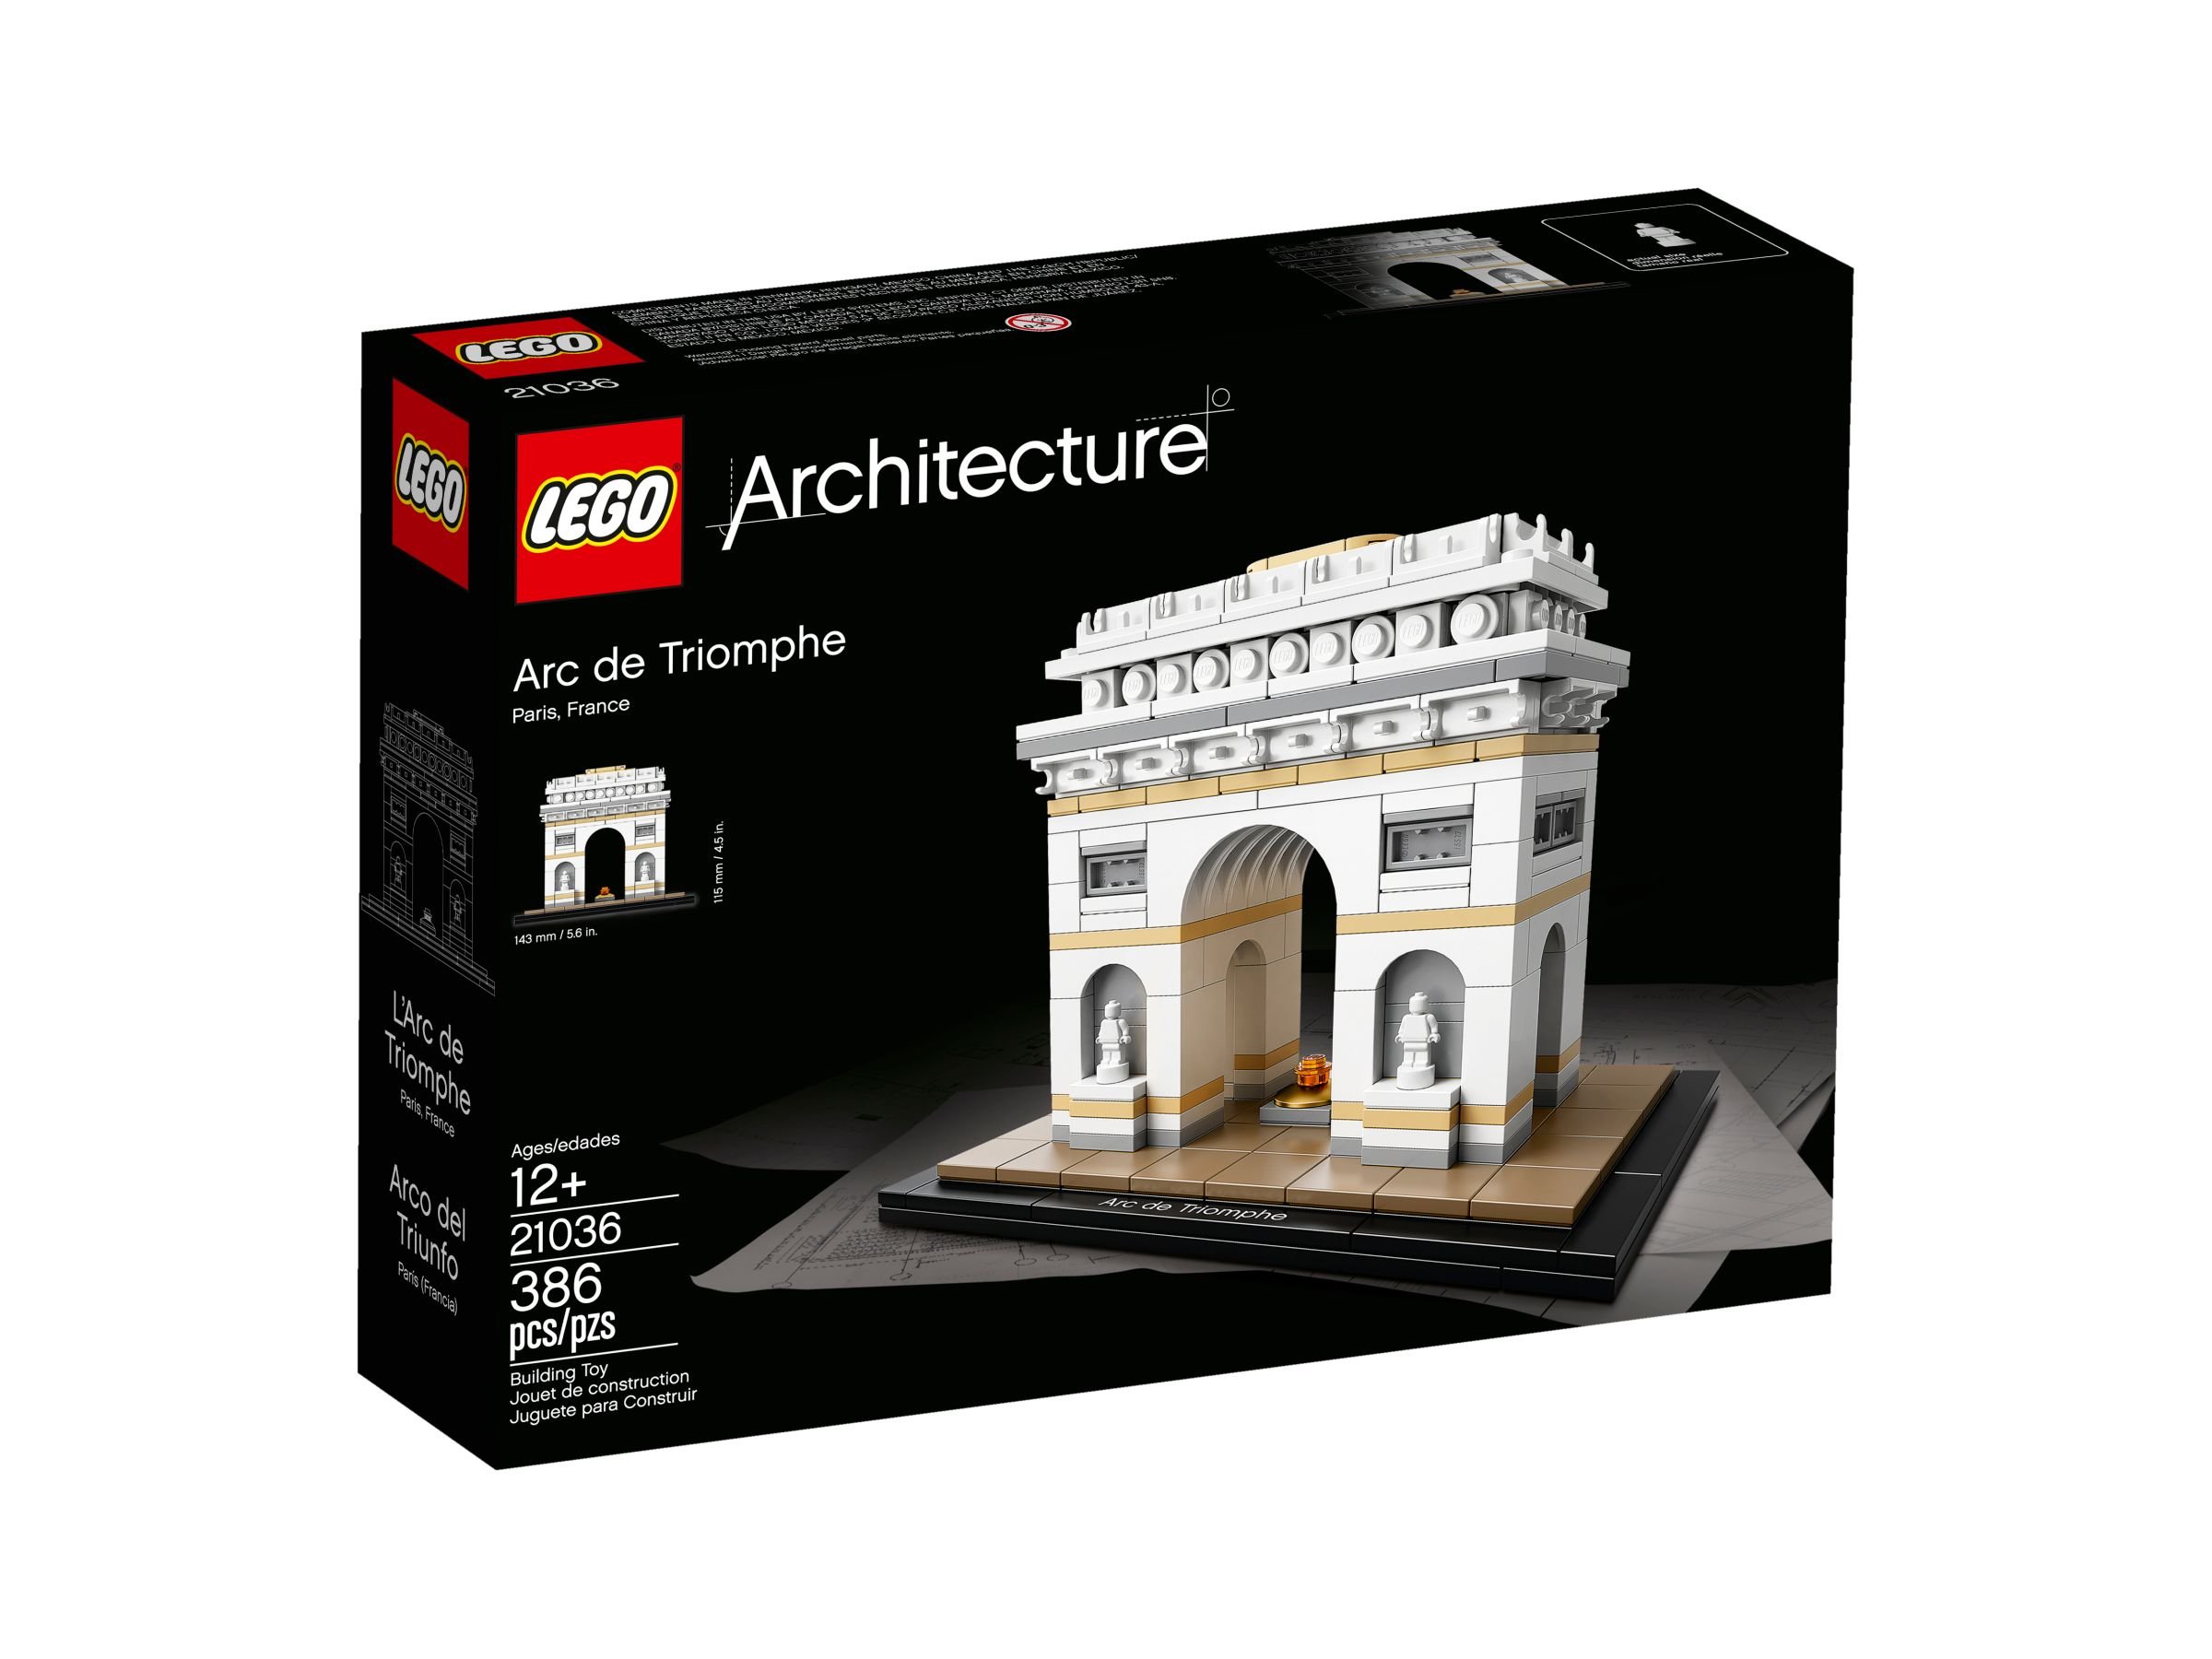 LEGO Architecture 21036 Der Triumphbogen LEGO_21036_alt1.jpg